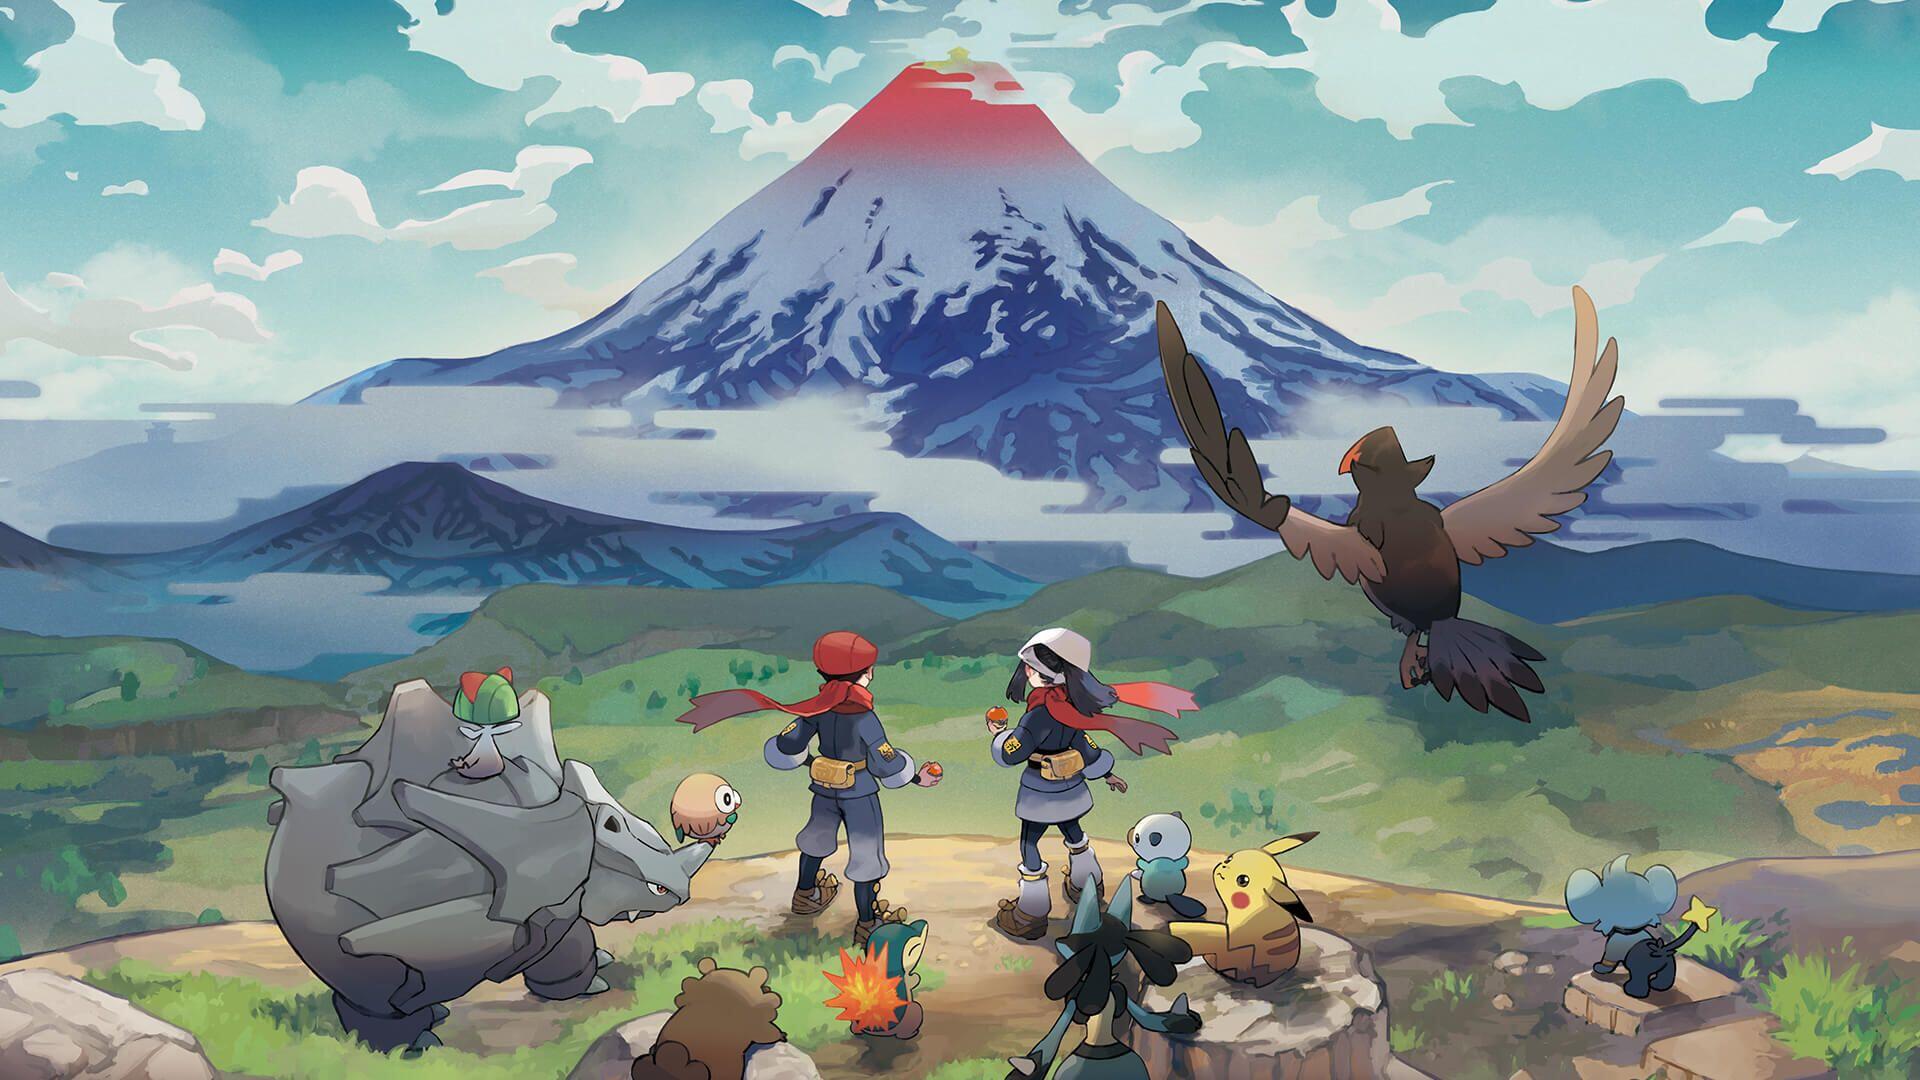 Le jeu vidéo « Légendes Pokémon : Arceus », sorti en janvier 2022, fait largement référence à l’esthétique japonaise de la fin du XIXᵉ siècle.